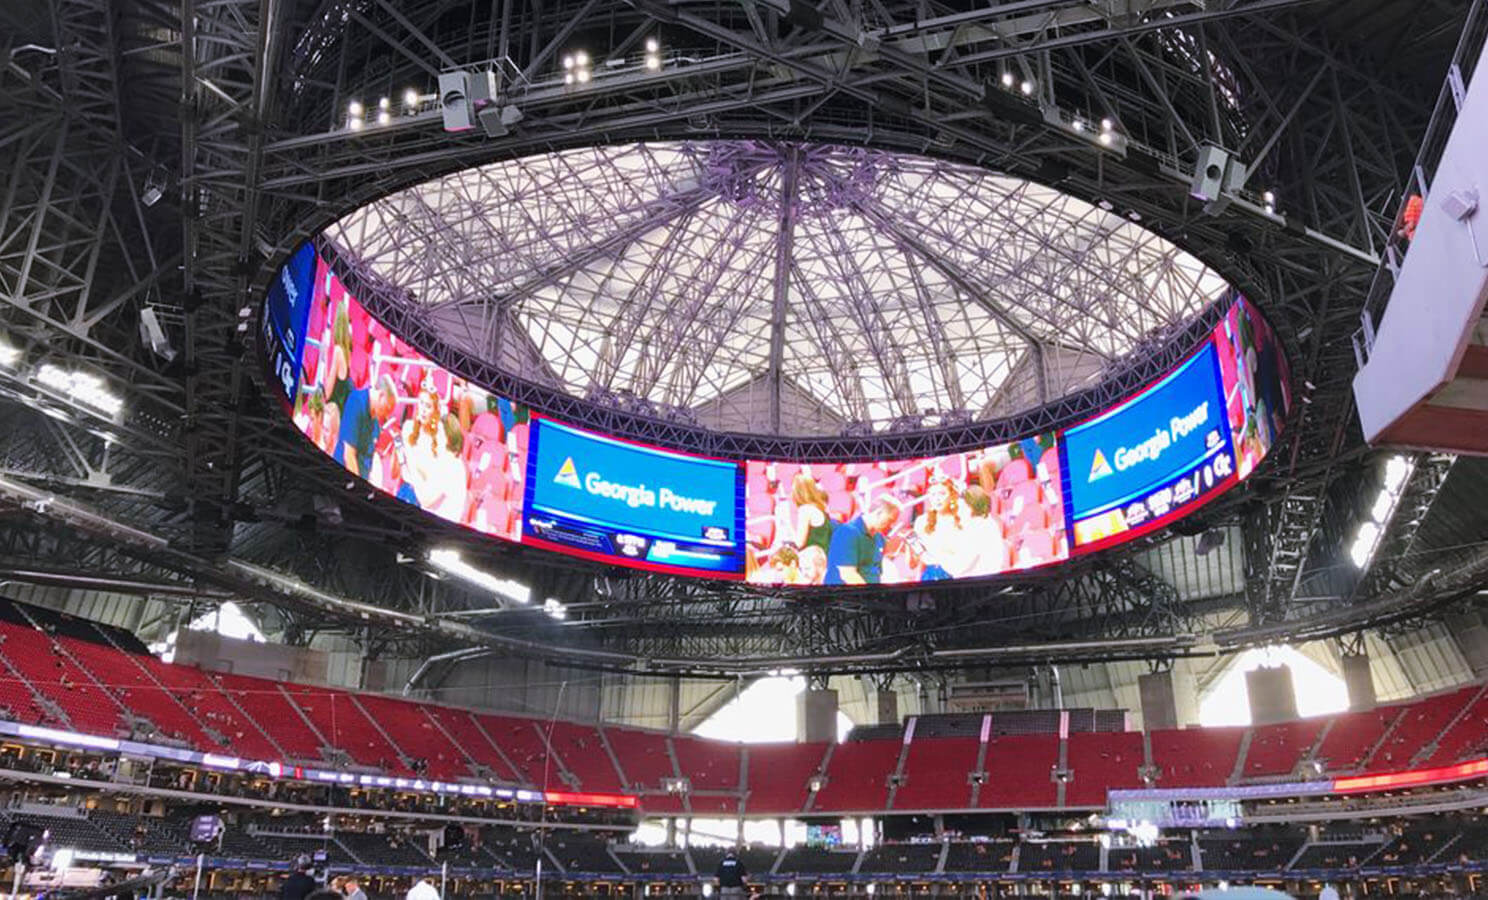 LEDビジョンはスポーツ観戦に新たな臨場感を与えている！「メルセデス・ベンツ・スタジアム」